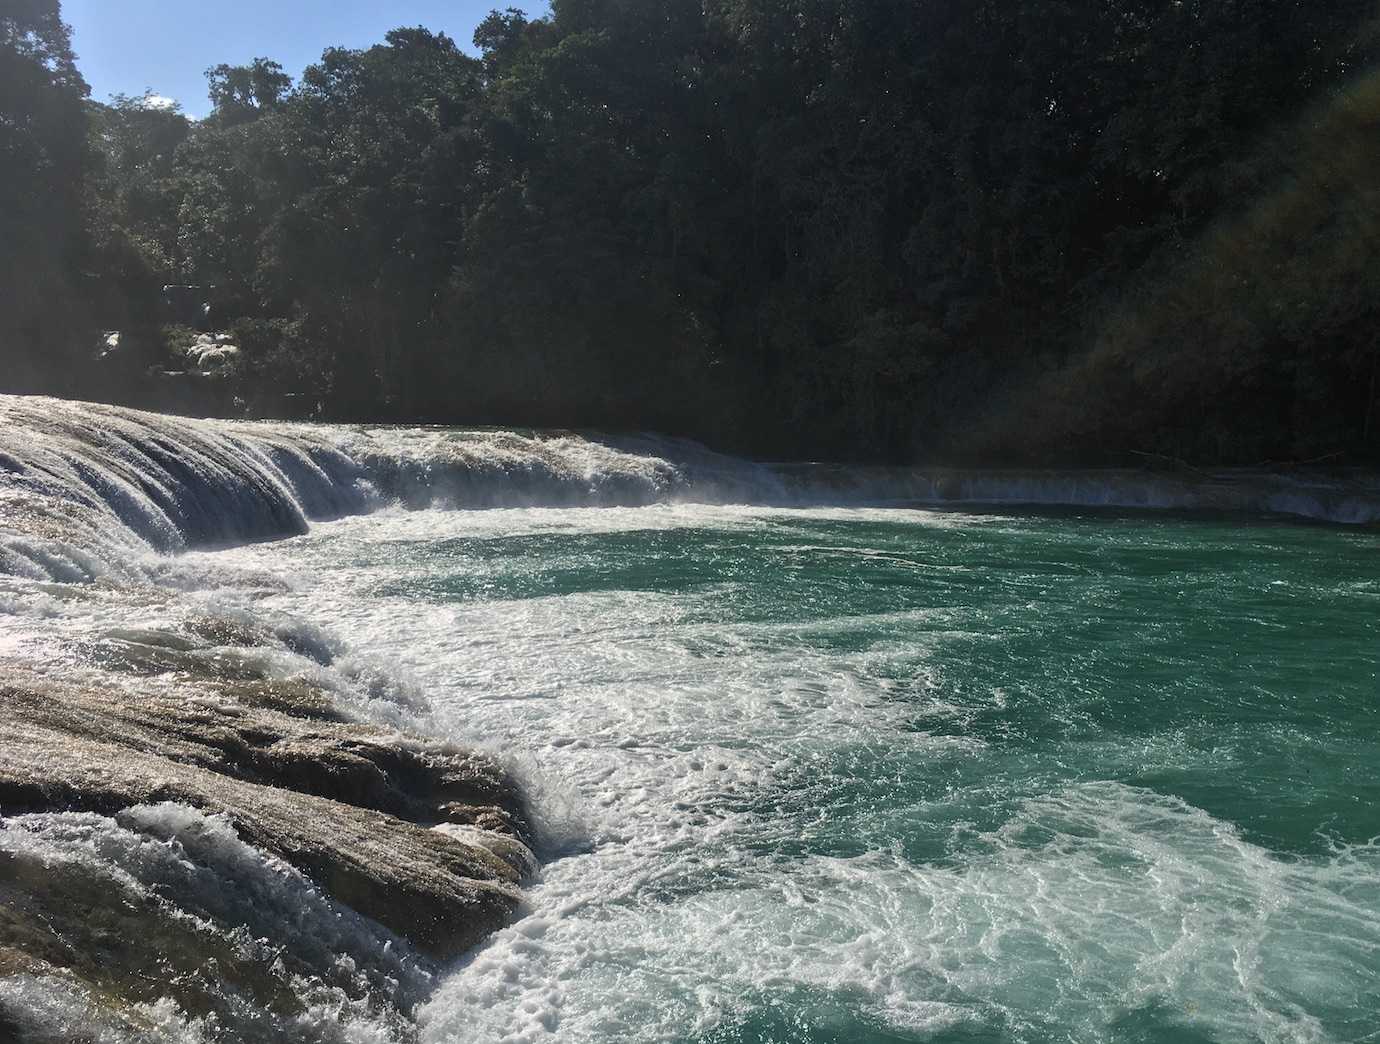 agua azul waterfall palenque